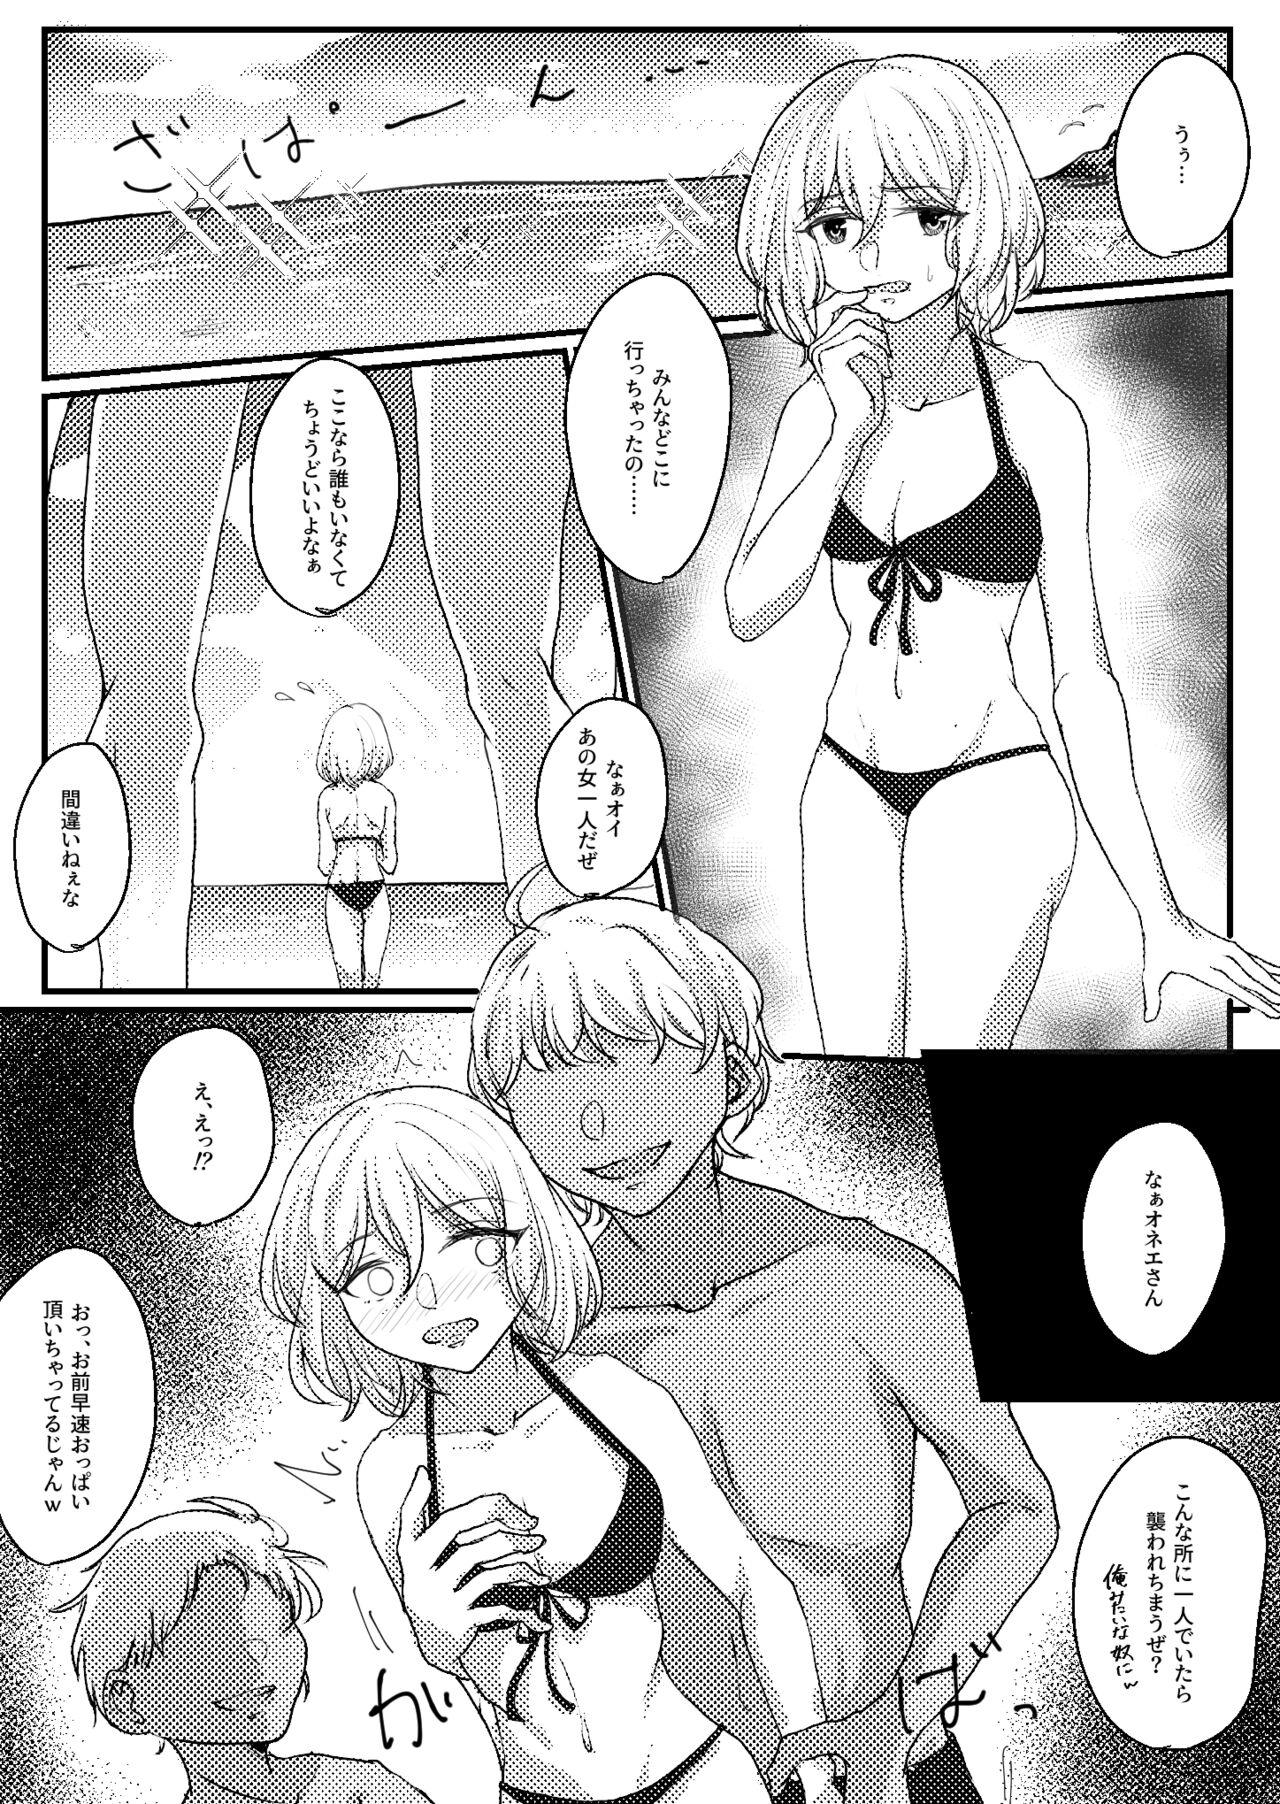 Teenage Mashiro beach sex commission - Bang dream Gay Public - Page 1